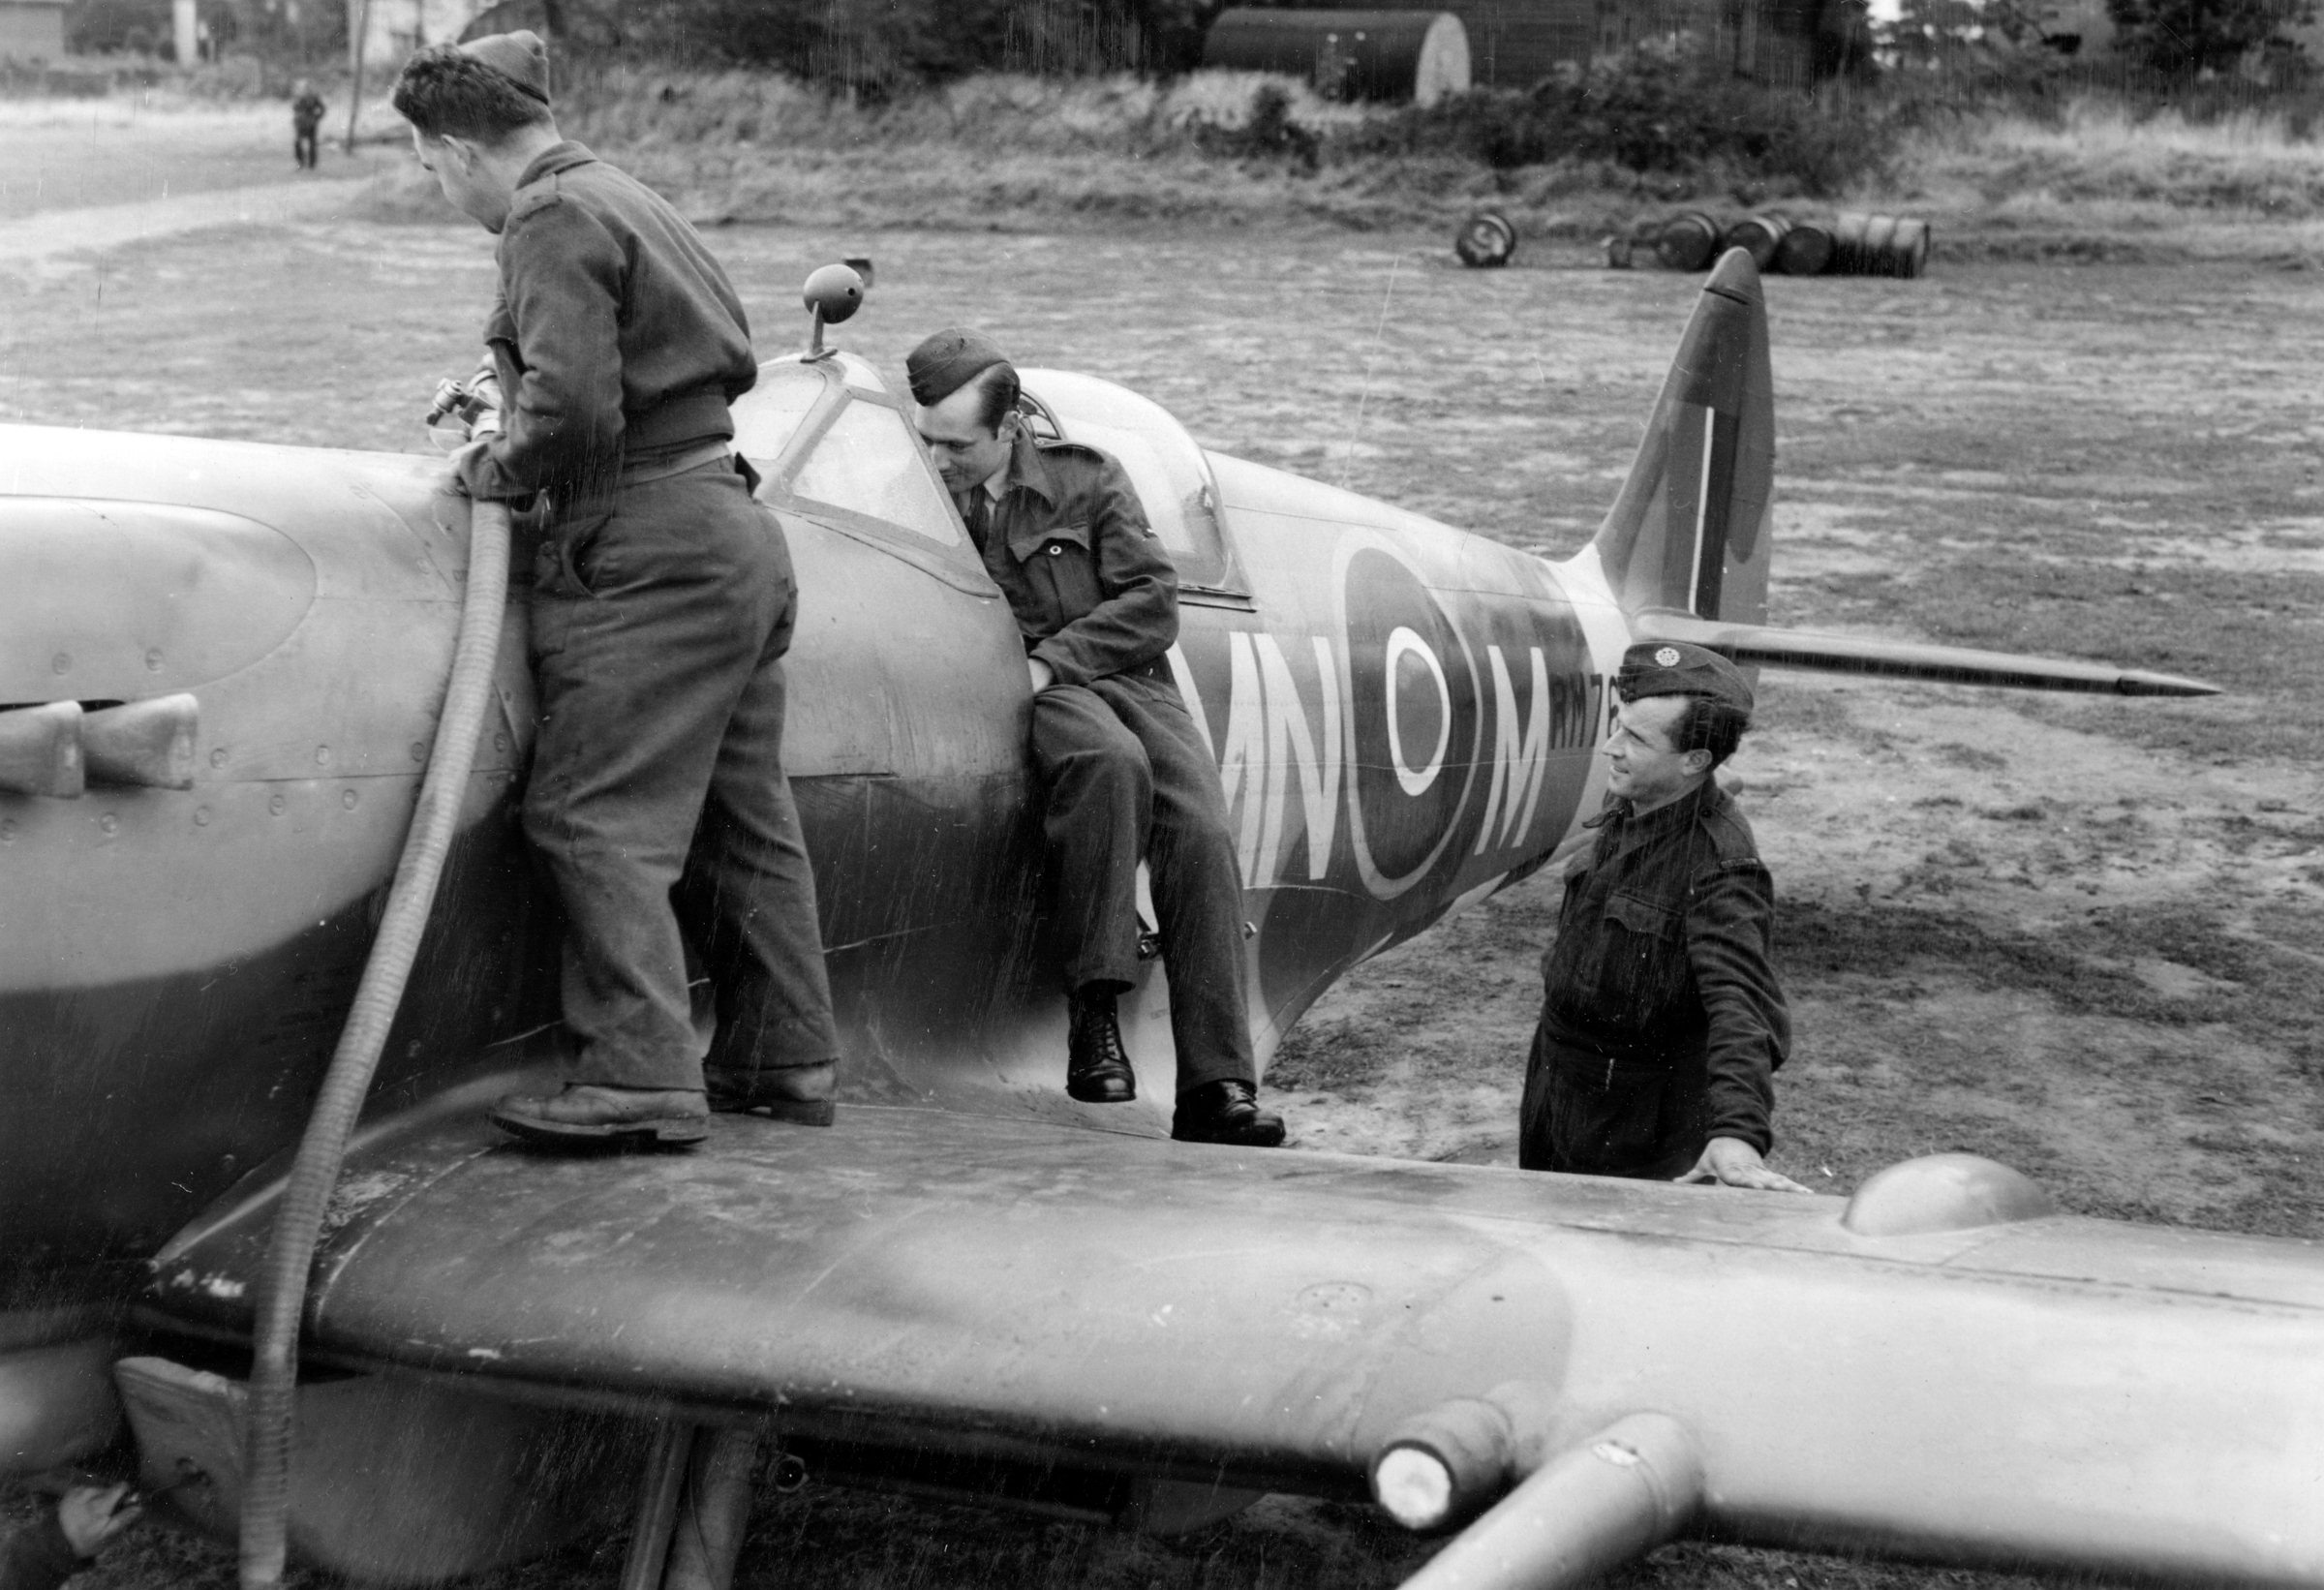 Three airmen refuel a Spitfire.